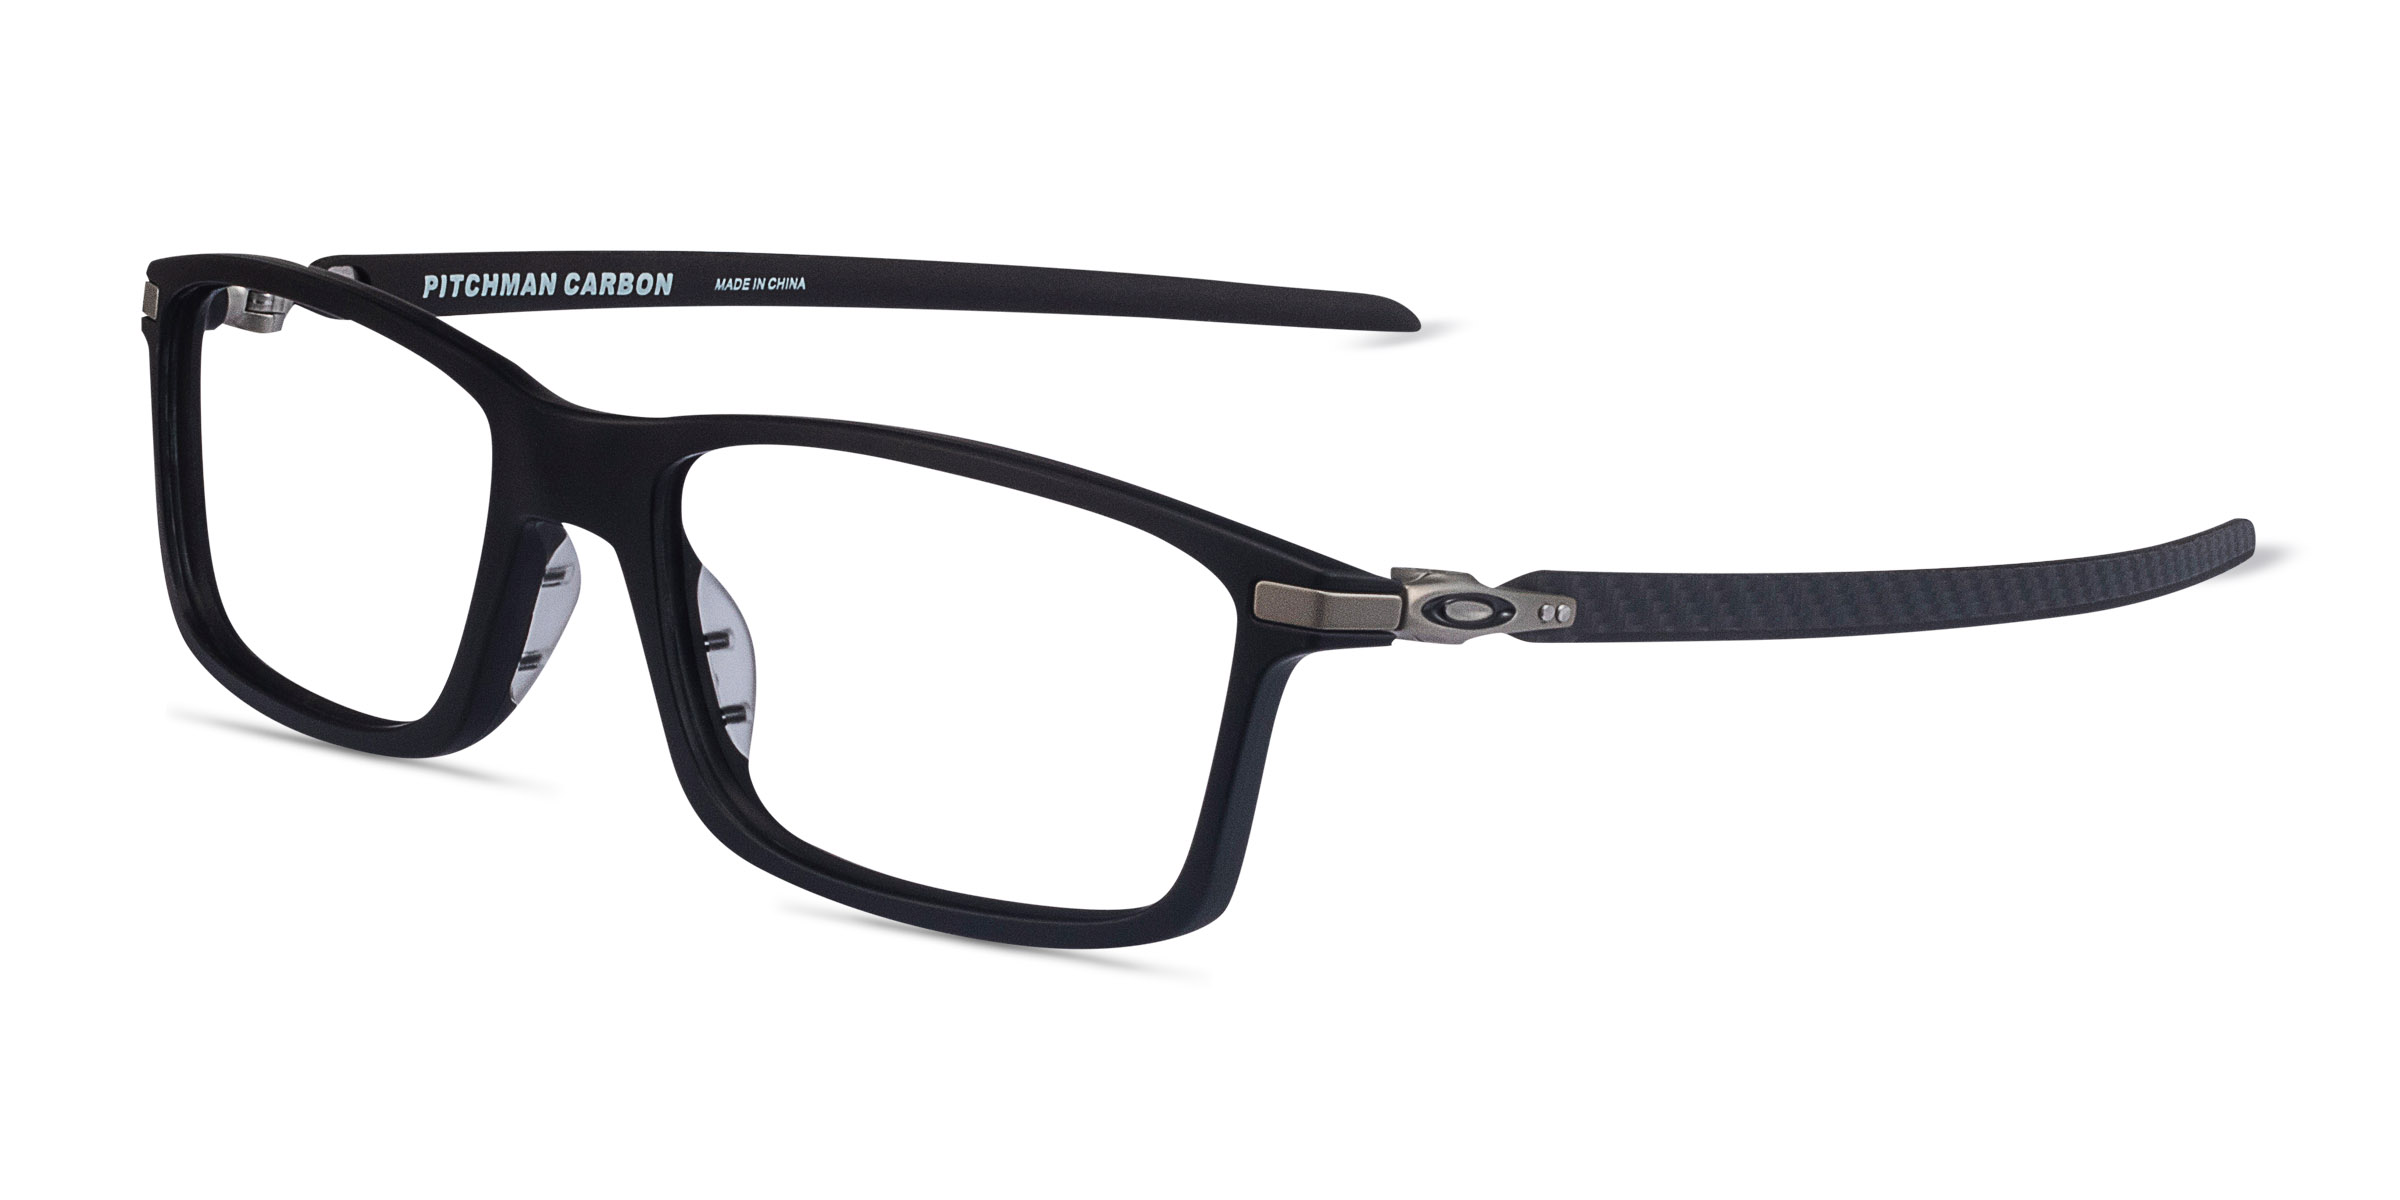 Oakley Pitchman Carbon - Rectangle Satin Black Frame Glasses For Men ...